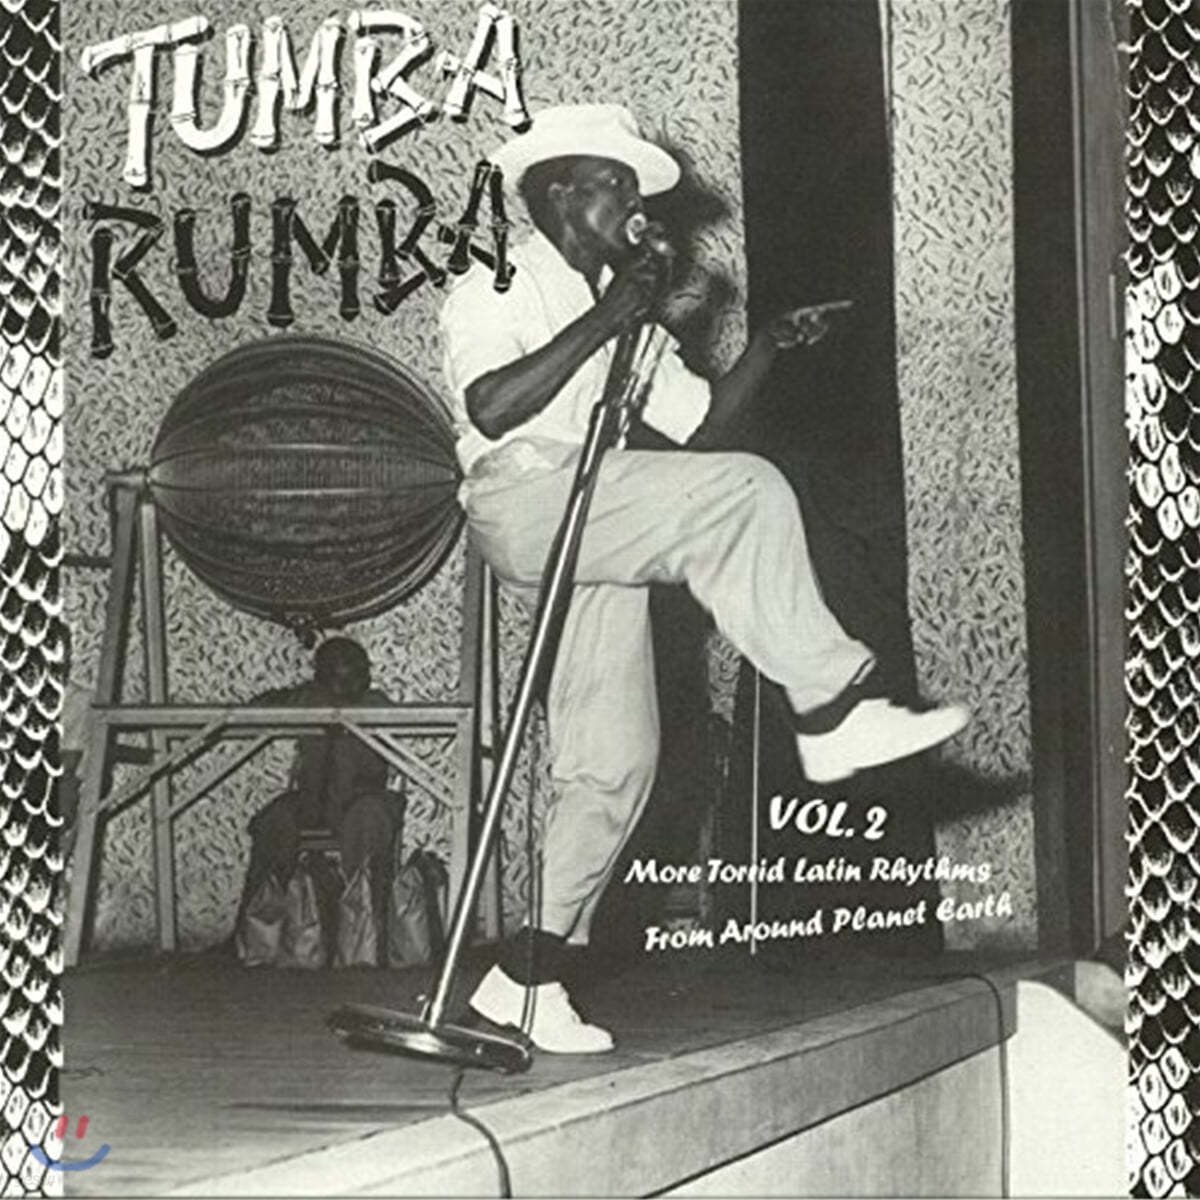 라틴 음악 컴필레이션 모음집 (Tumba Rumba Vol. 2) [LP] 